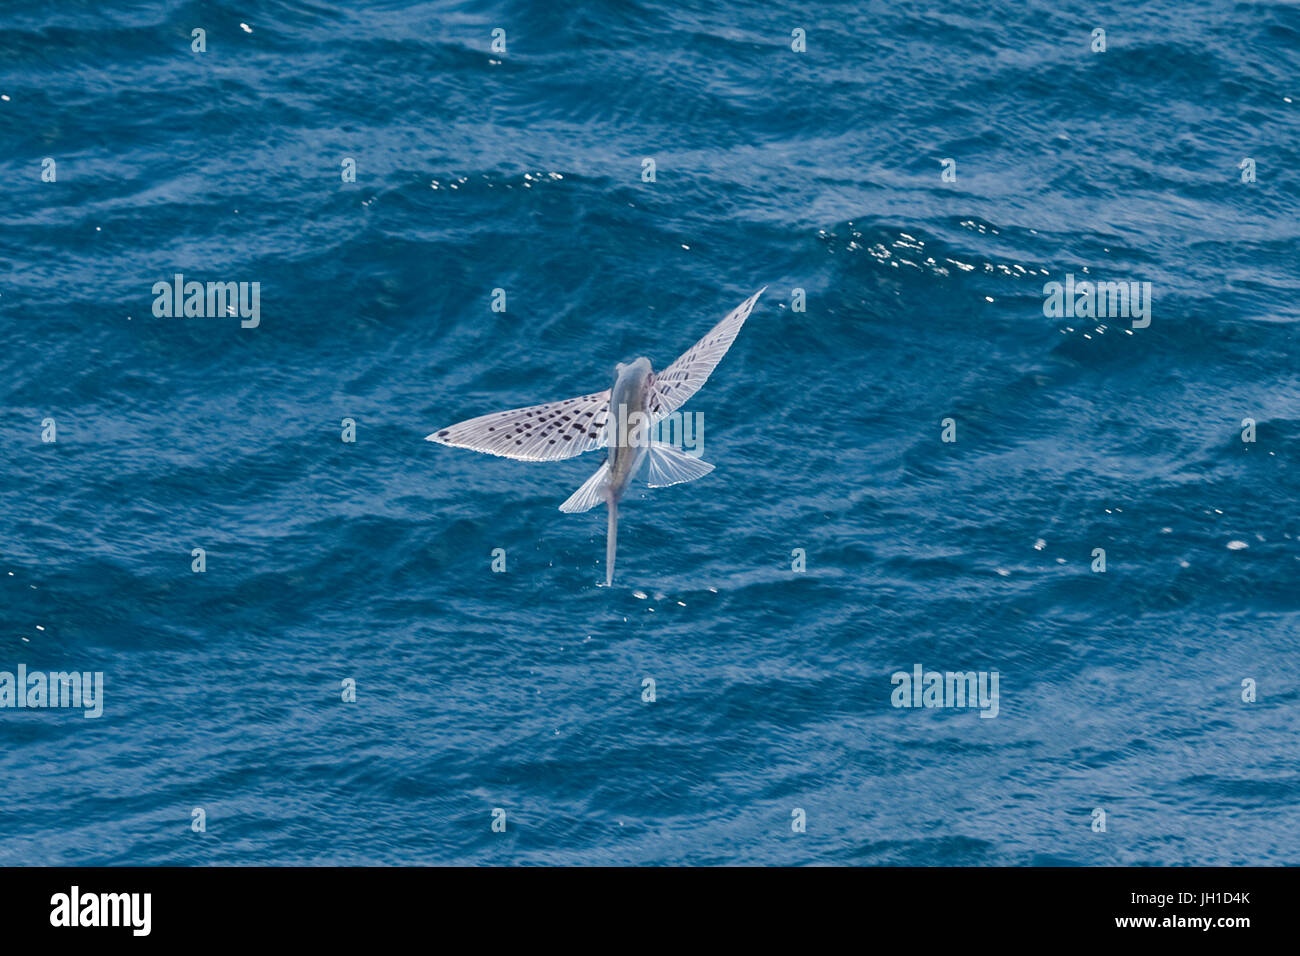 Indischen Ozean Flying Fish, in der Mitte Luft, Malediven, Indischer Ozean Stockfoto